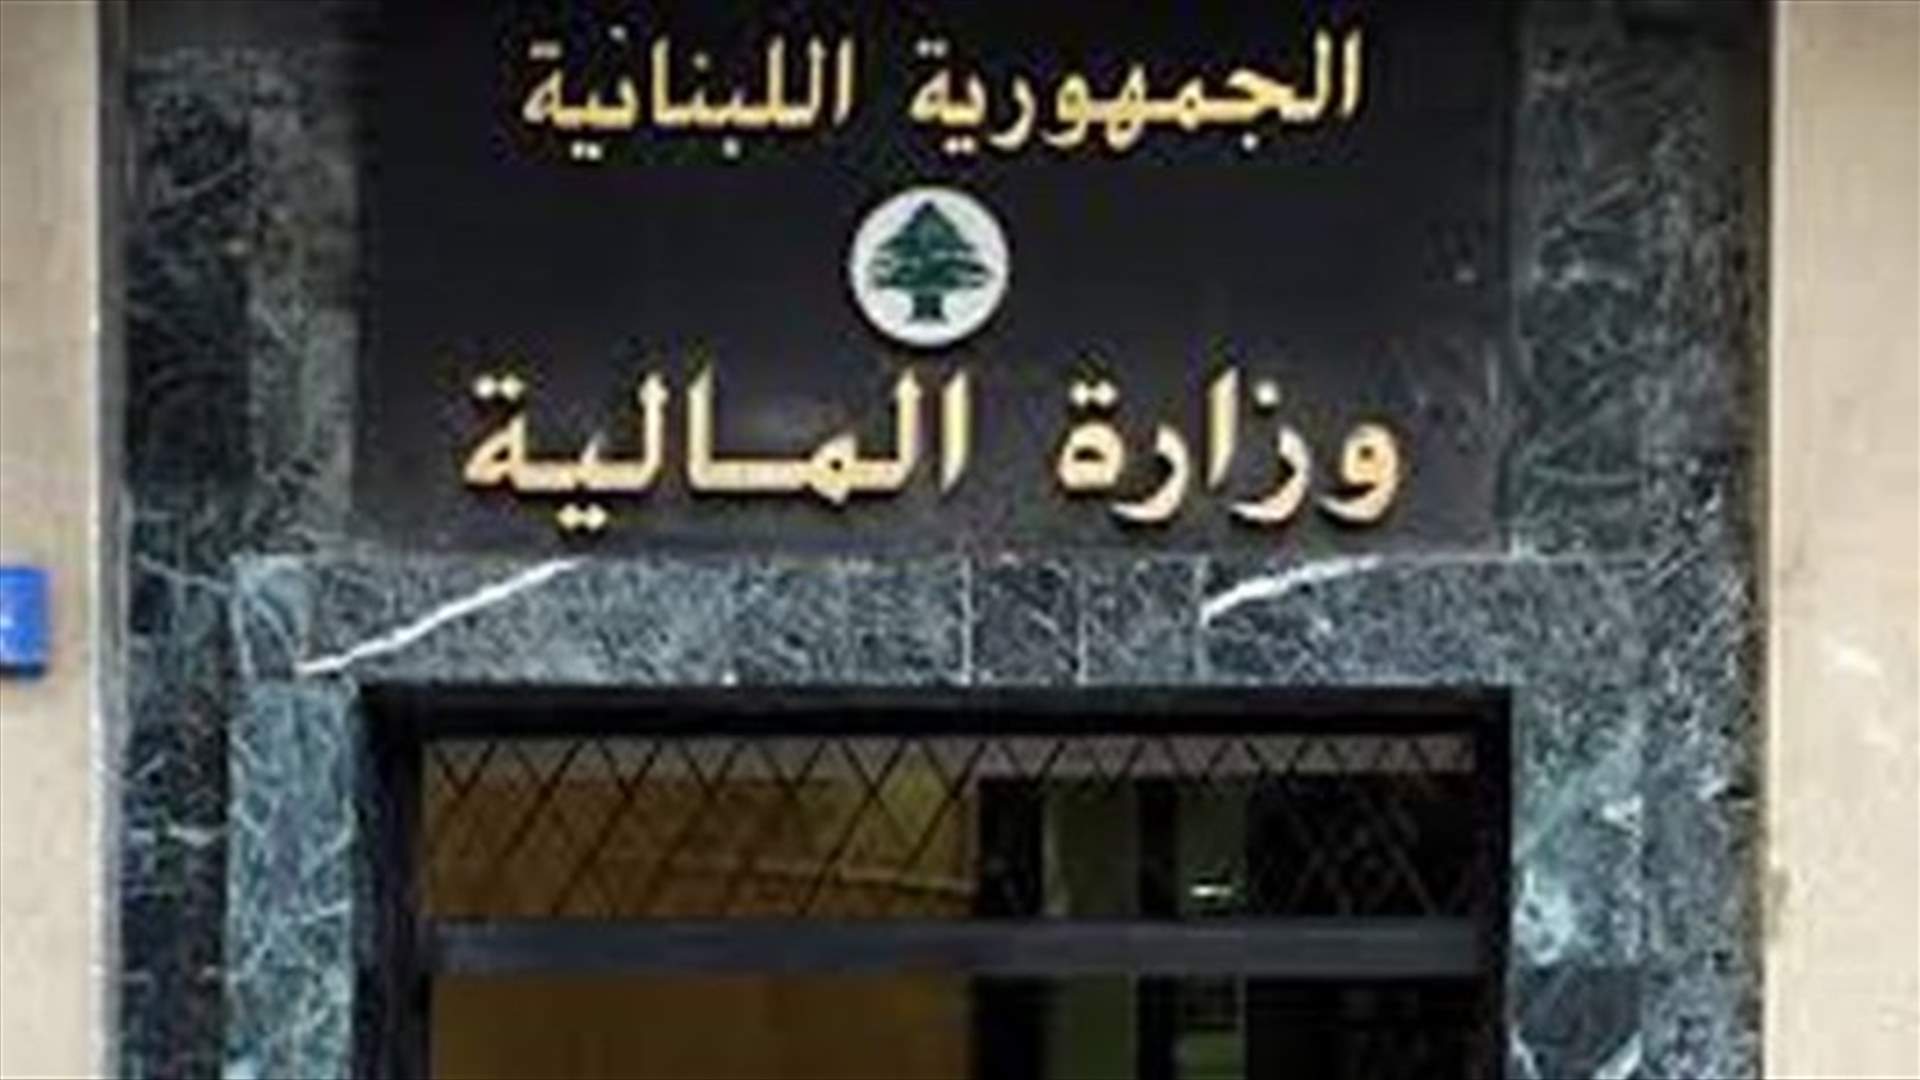 وزارة المال: تم تحويل معاشات المتقاعدين عن شهر آب ٢٠٢٠ إلى مصرف لبنان بعد معالجة العطل التقني